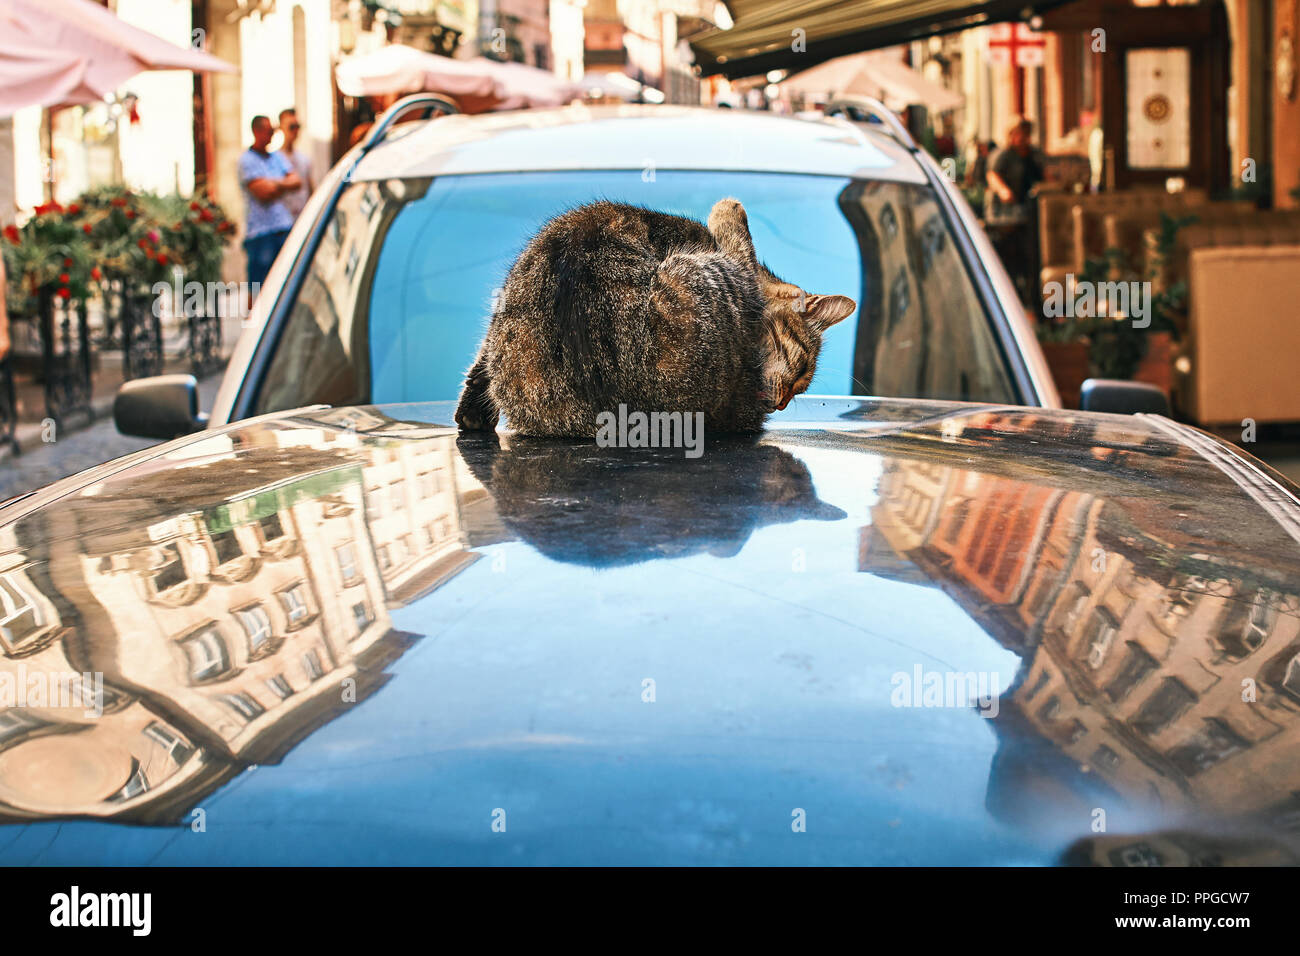 Lavage de chat lui-même assis sur un toit d'automobile dans le vieux centre-ville historique européen Banque D'Images